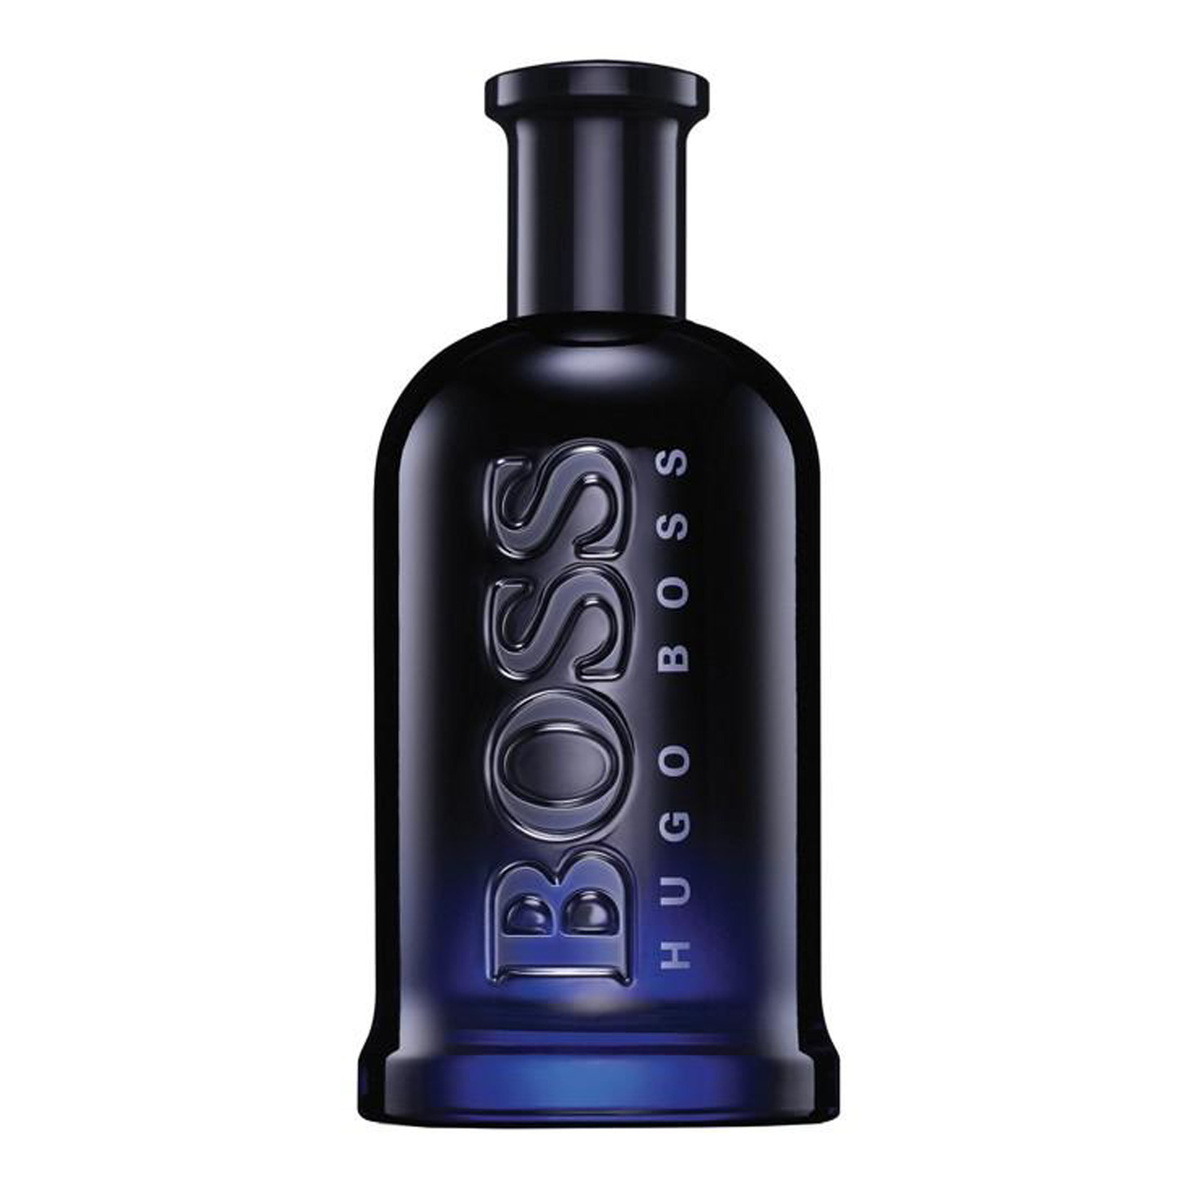 Hugo Boss Bottled Night Eau de Toilette For Men, 200 ml